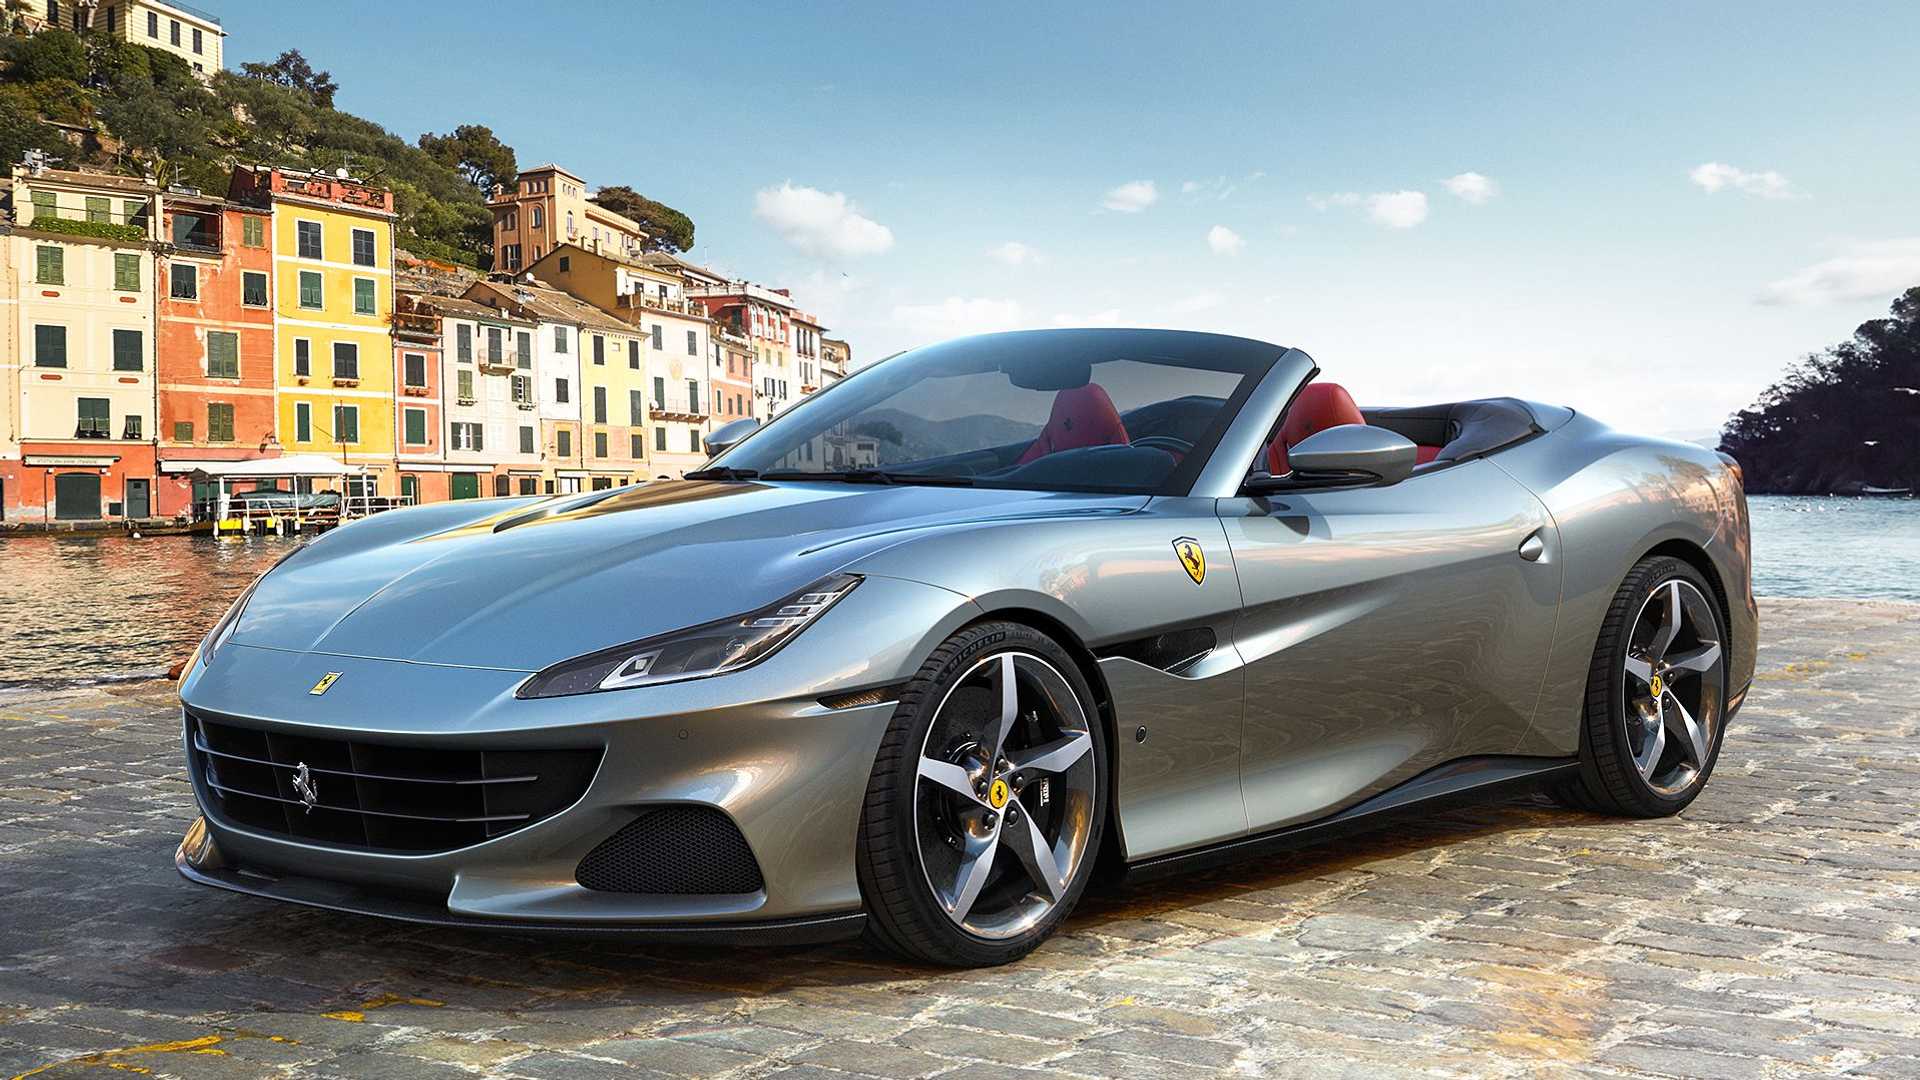 Ferrari Portofino M Artık Daha Güçlü ve Agresif